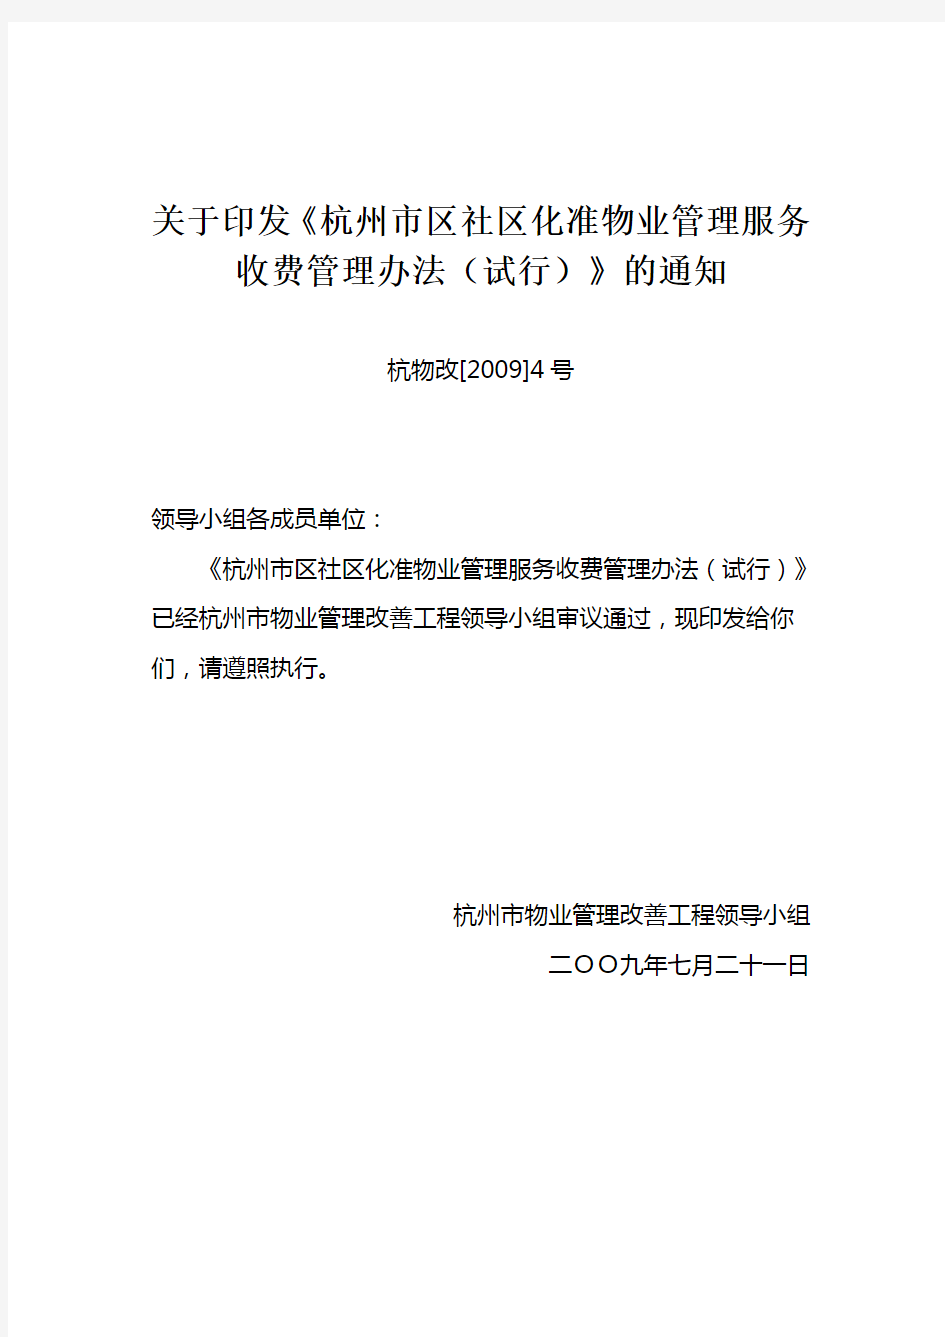 关于印发《杭州市区社区化准物业管理服务收费管理办法(试行)》